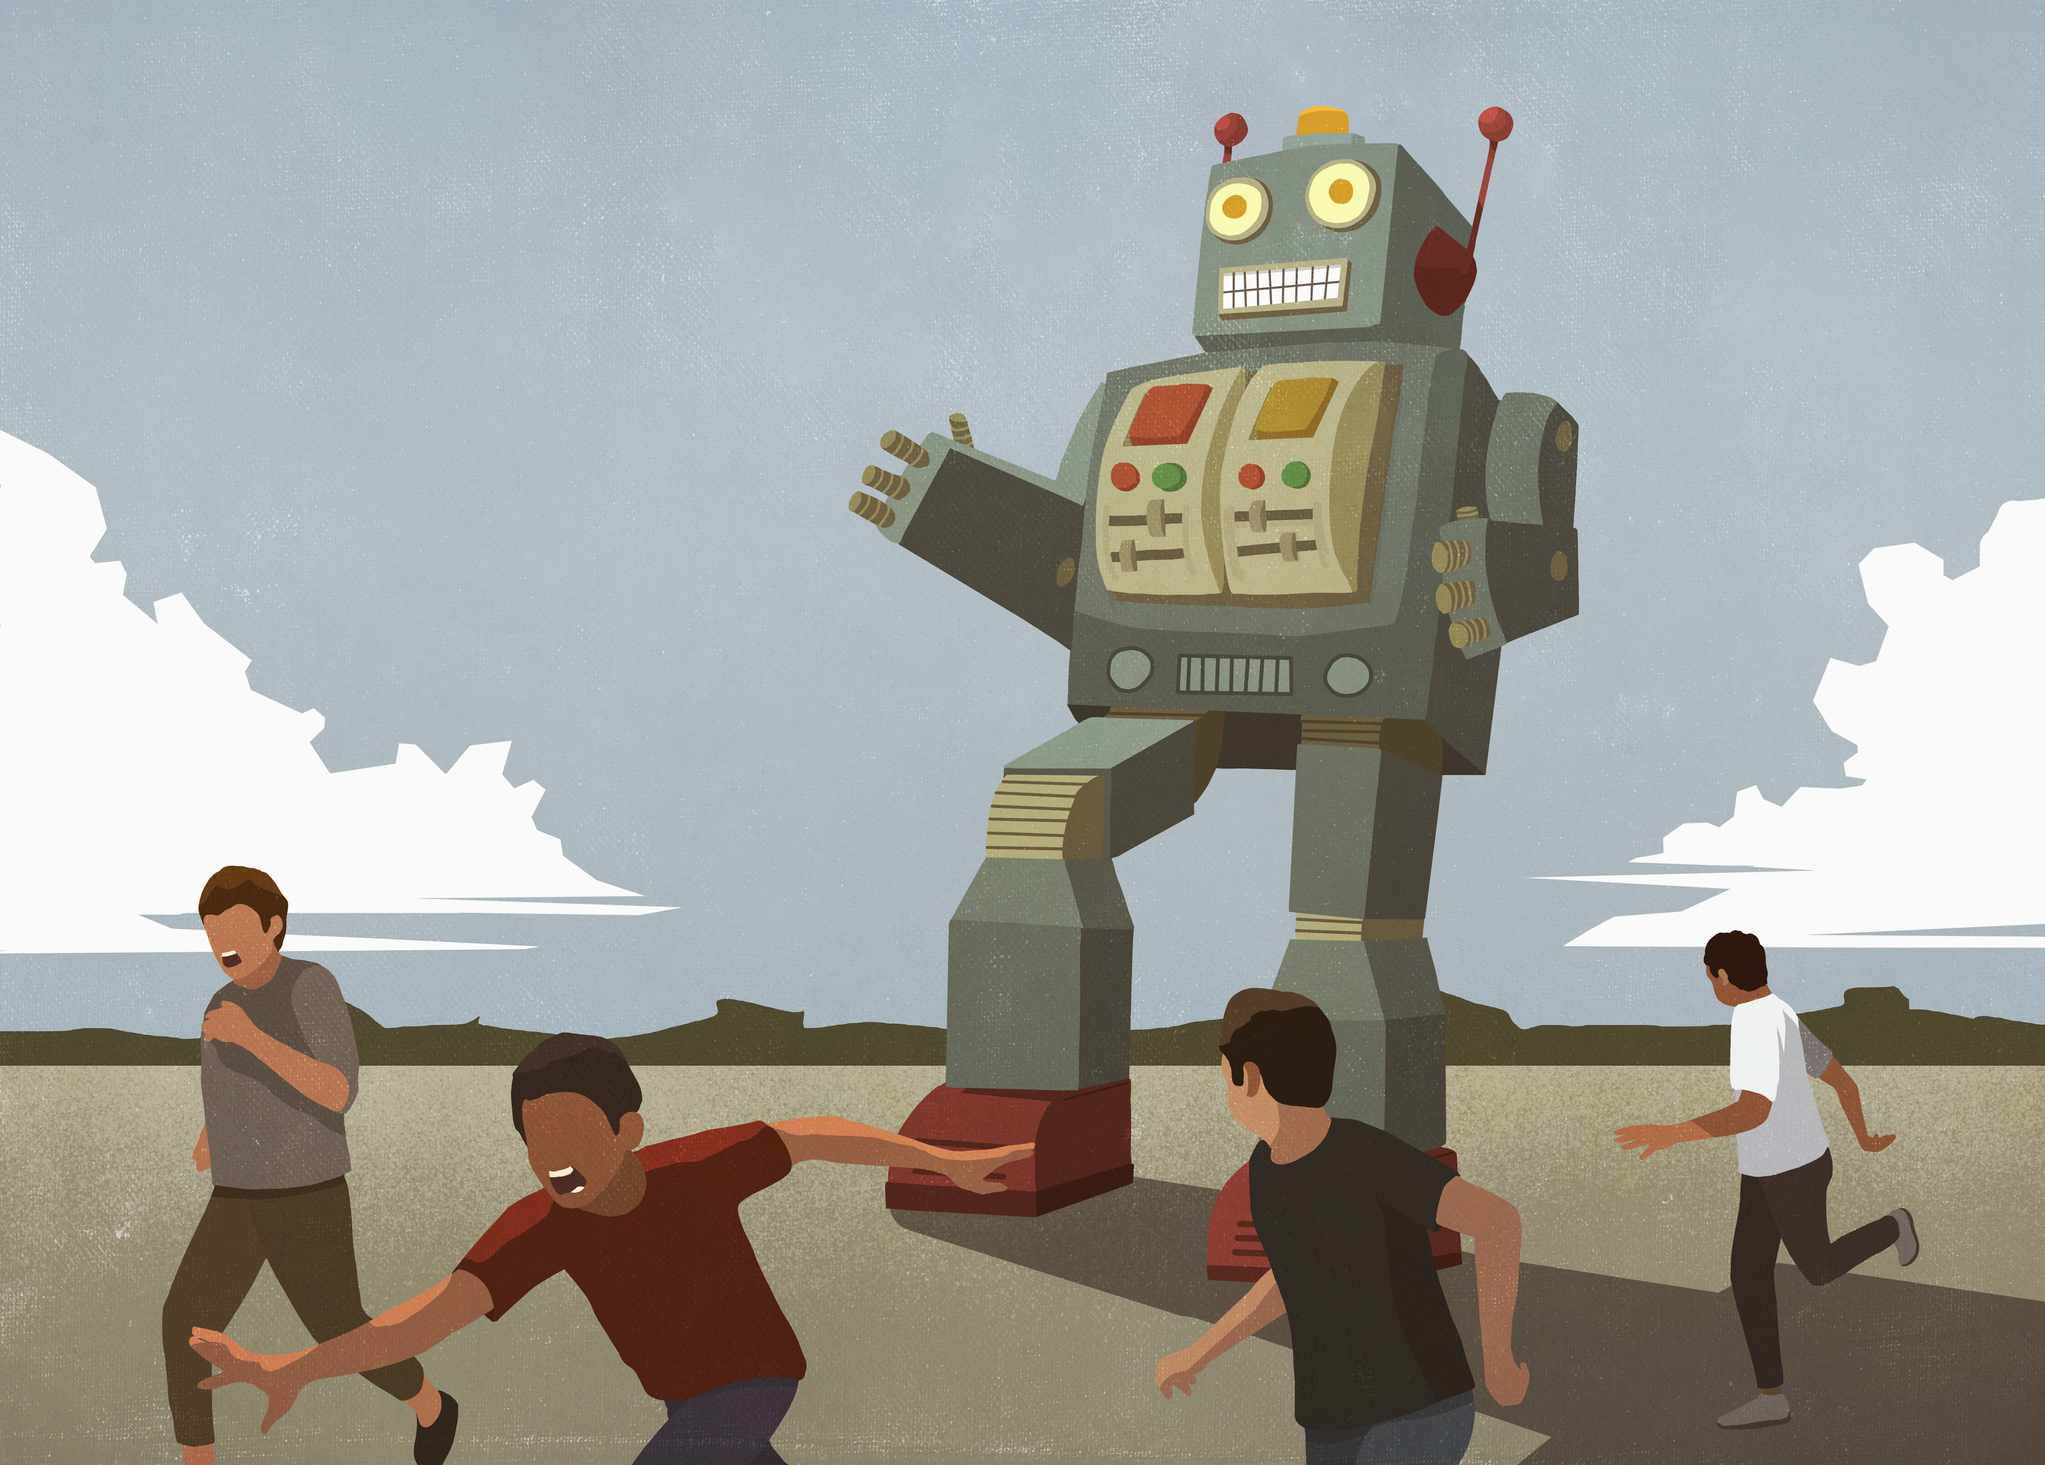 Illustratie van een grote robot die mensen achtervolgt. 